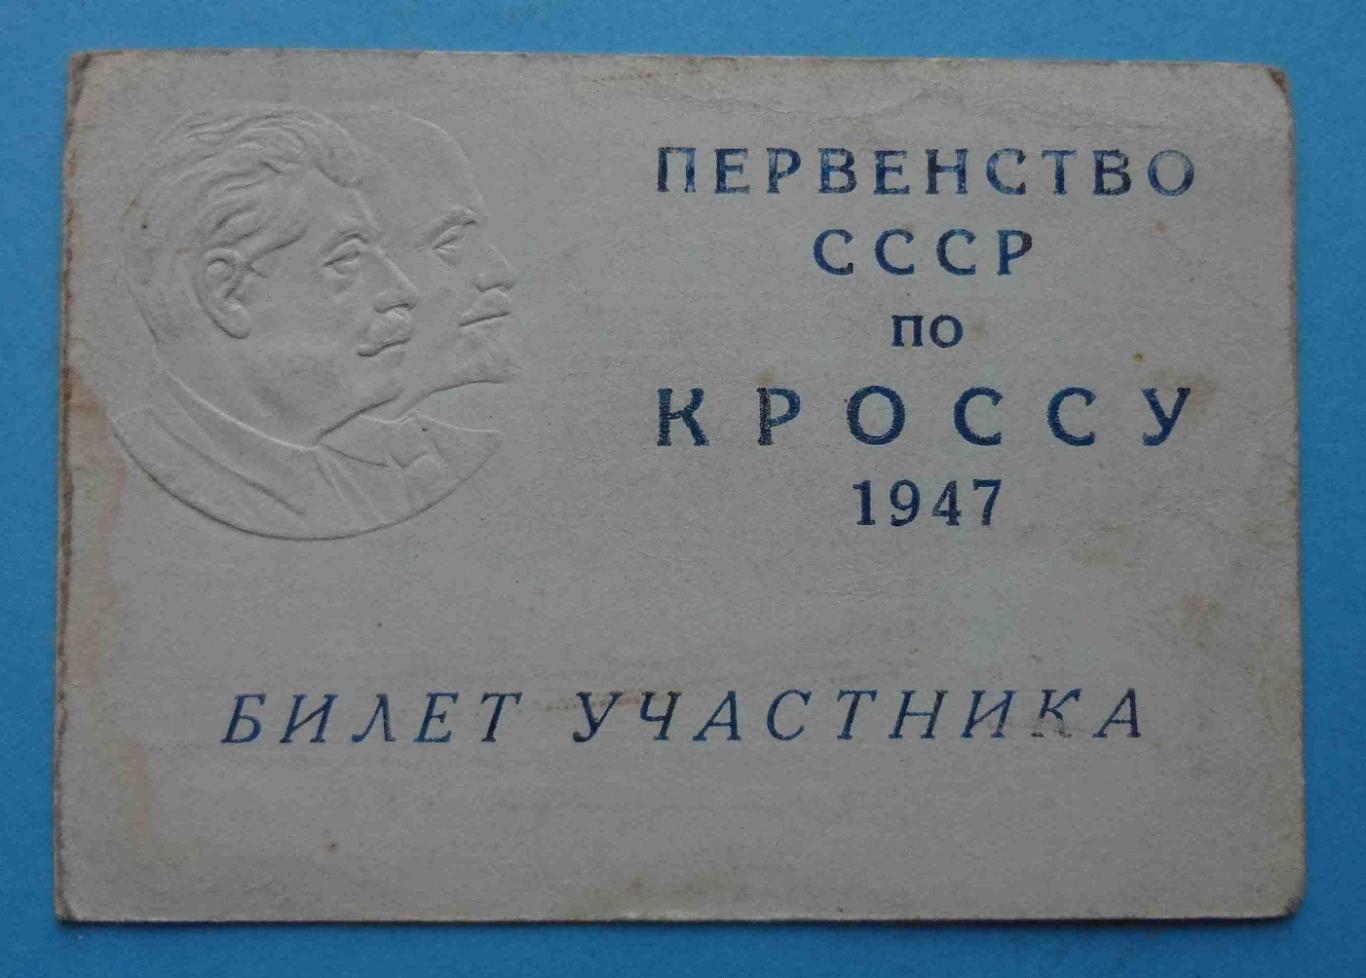 Первенство СССР по кроссу 1947 Билет участника Ленин Сталин док чистый